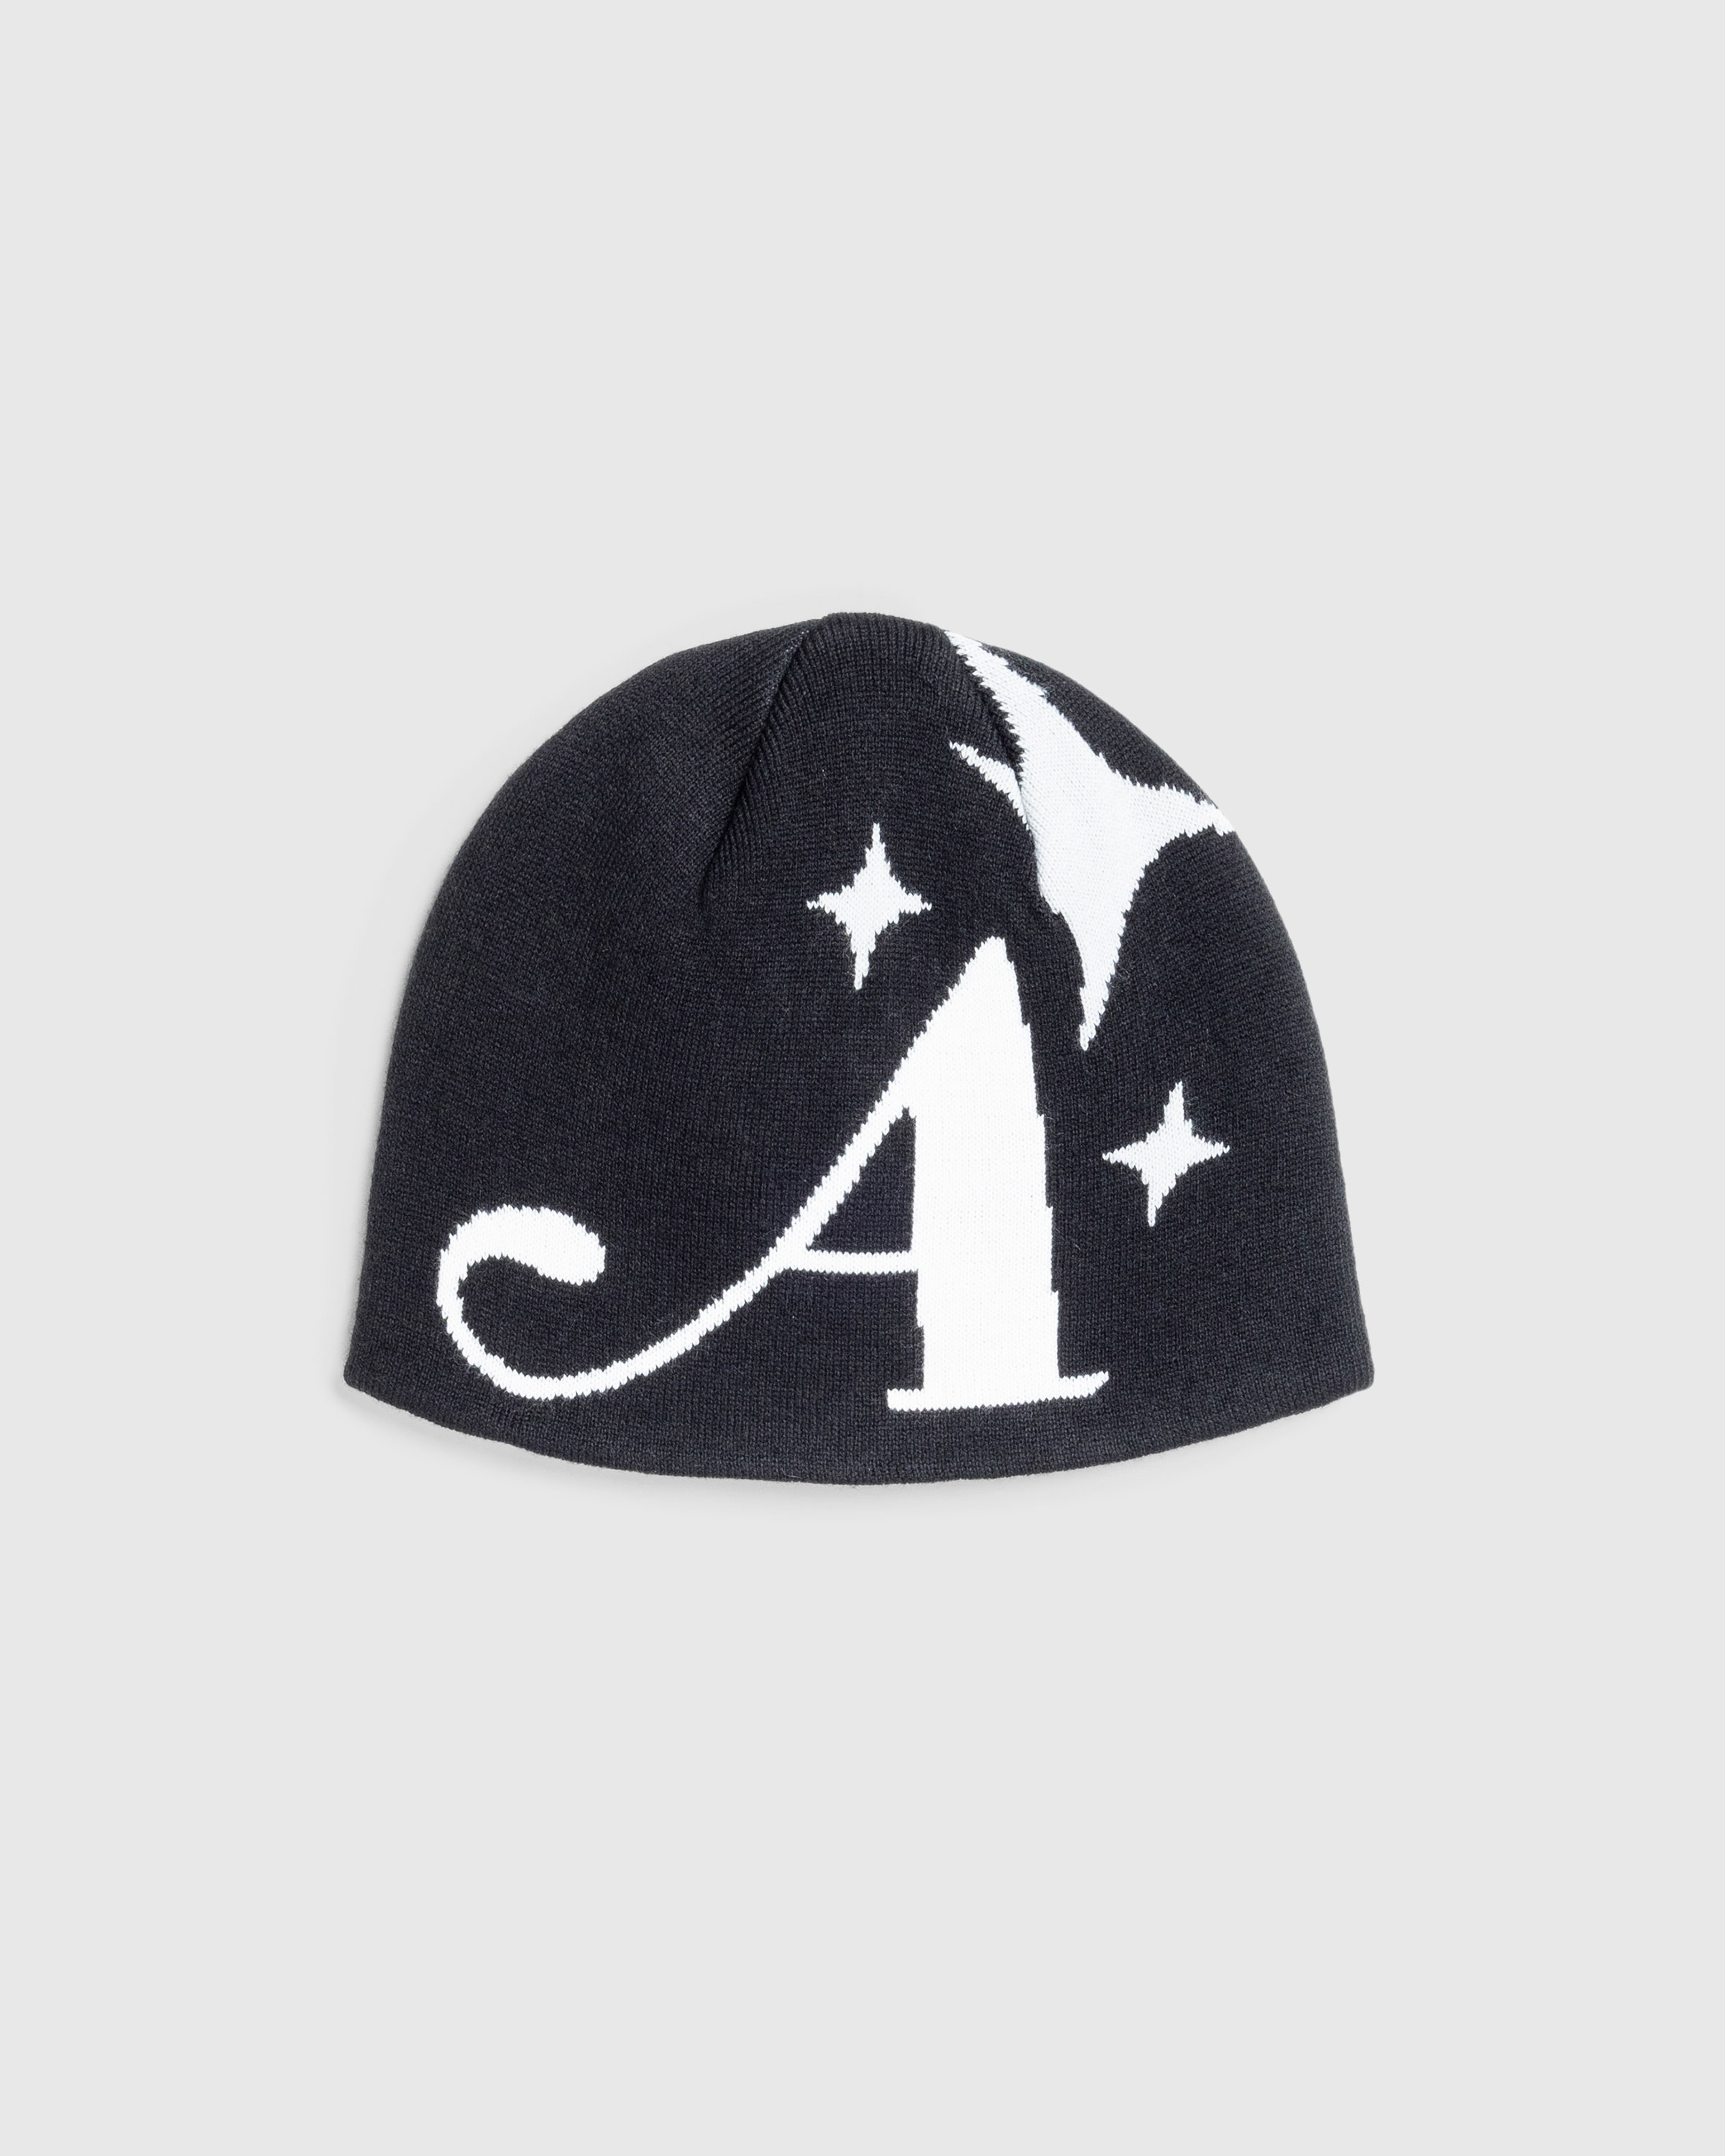 Awake NY – Star A Skully Black - Hats - Black - Image 1